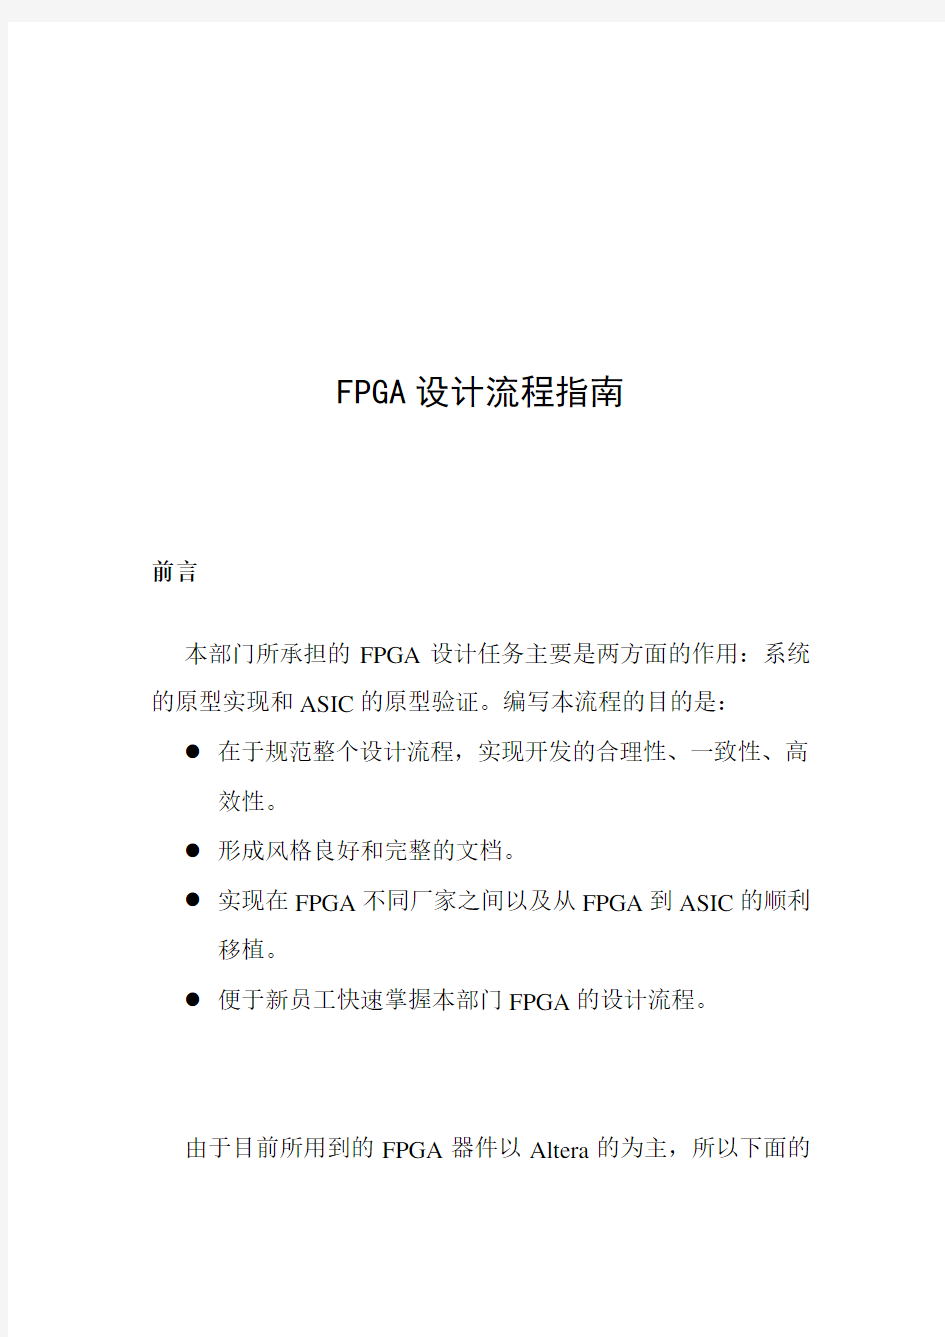 (完整版)华为fpga设计流程指南